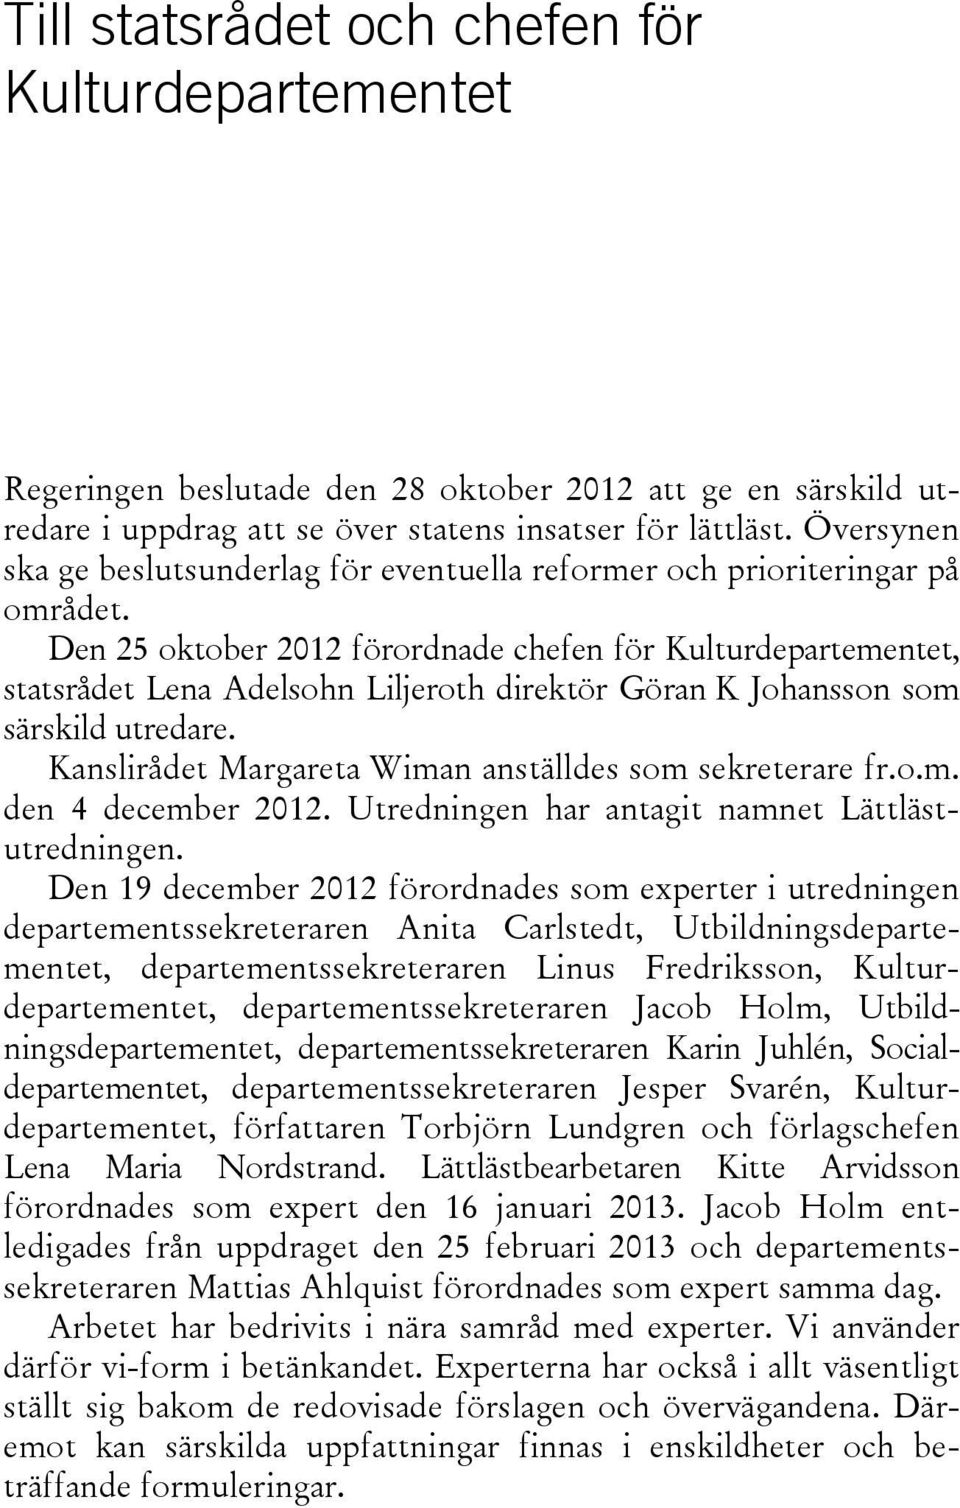 Den 25 oktober 2012 förordnade chefen för Kulturdepartementet, statsrådet Lena Adelsohn Liljeroth direktör Göran K Johansson som särskild utredare.